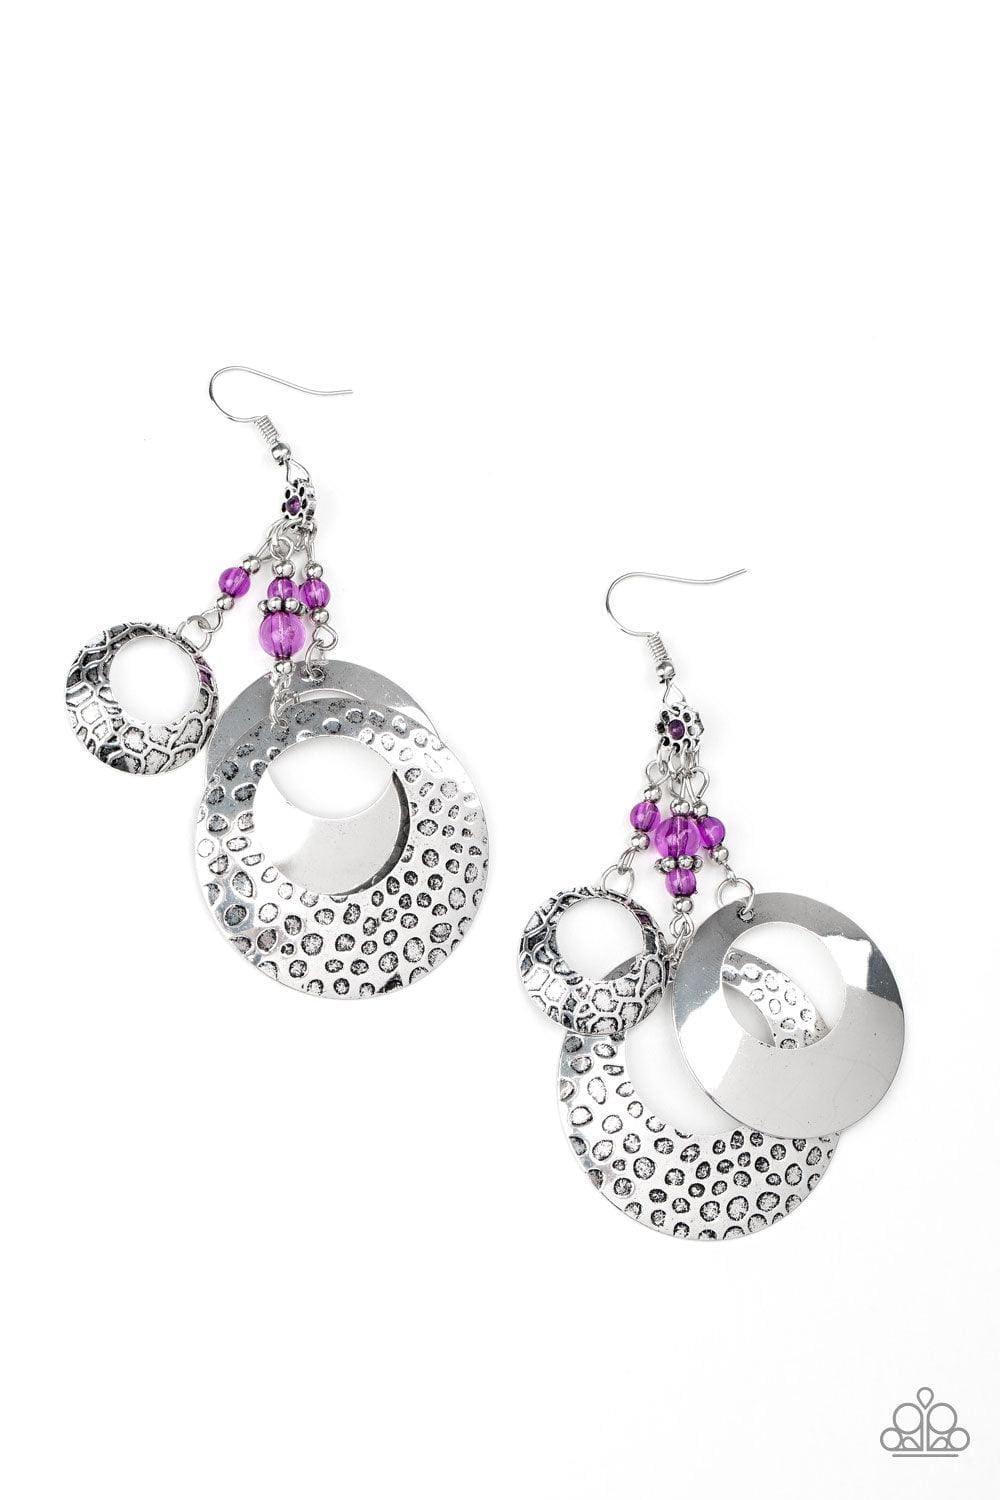 Paparazzi Accessories - Wanderlust Garden - Purple Earrings - Bling by JessieK